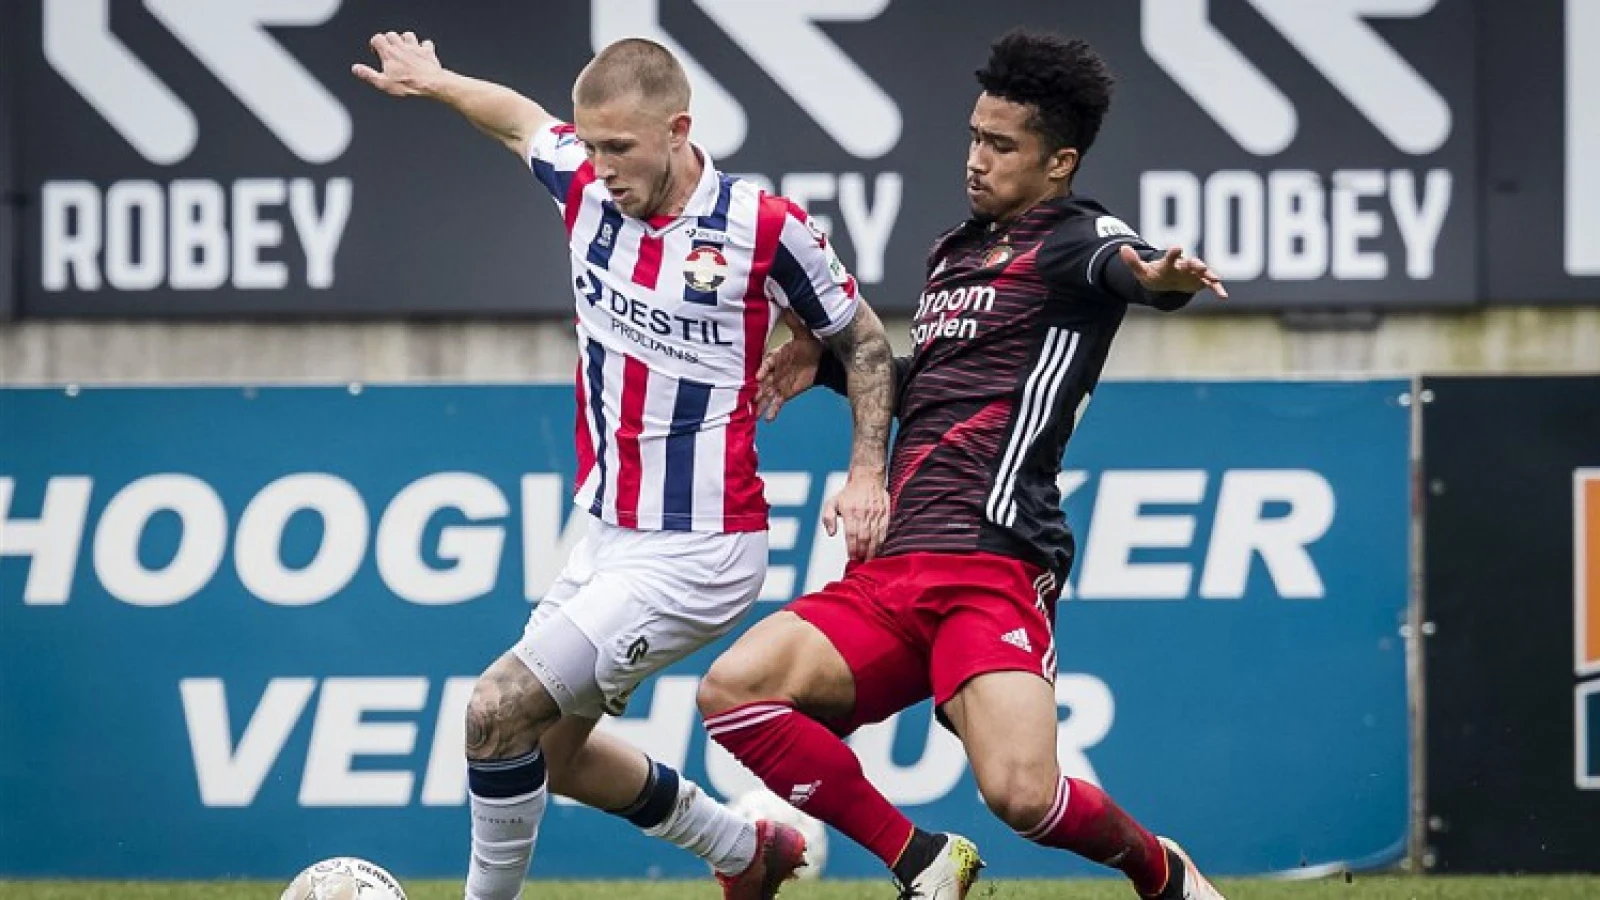 Speelschema seizoen 2021/2022 definitief: Feyenoord start in Tilburg